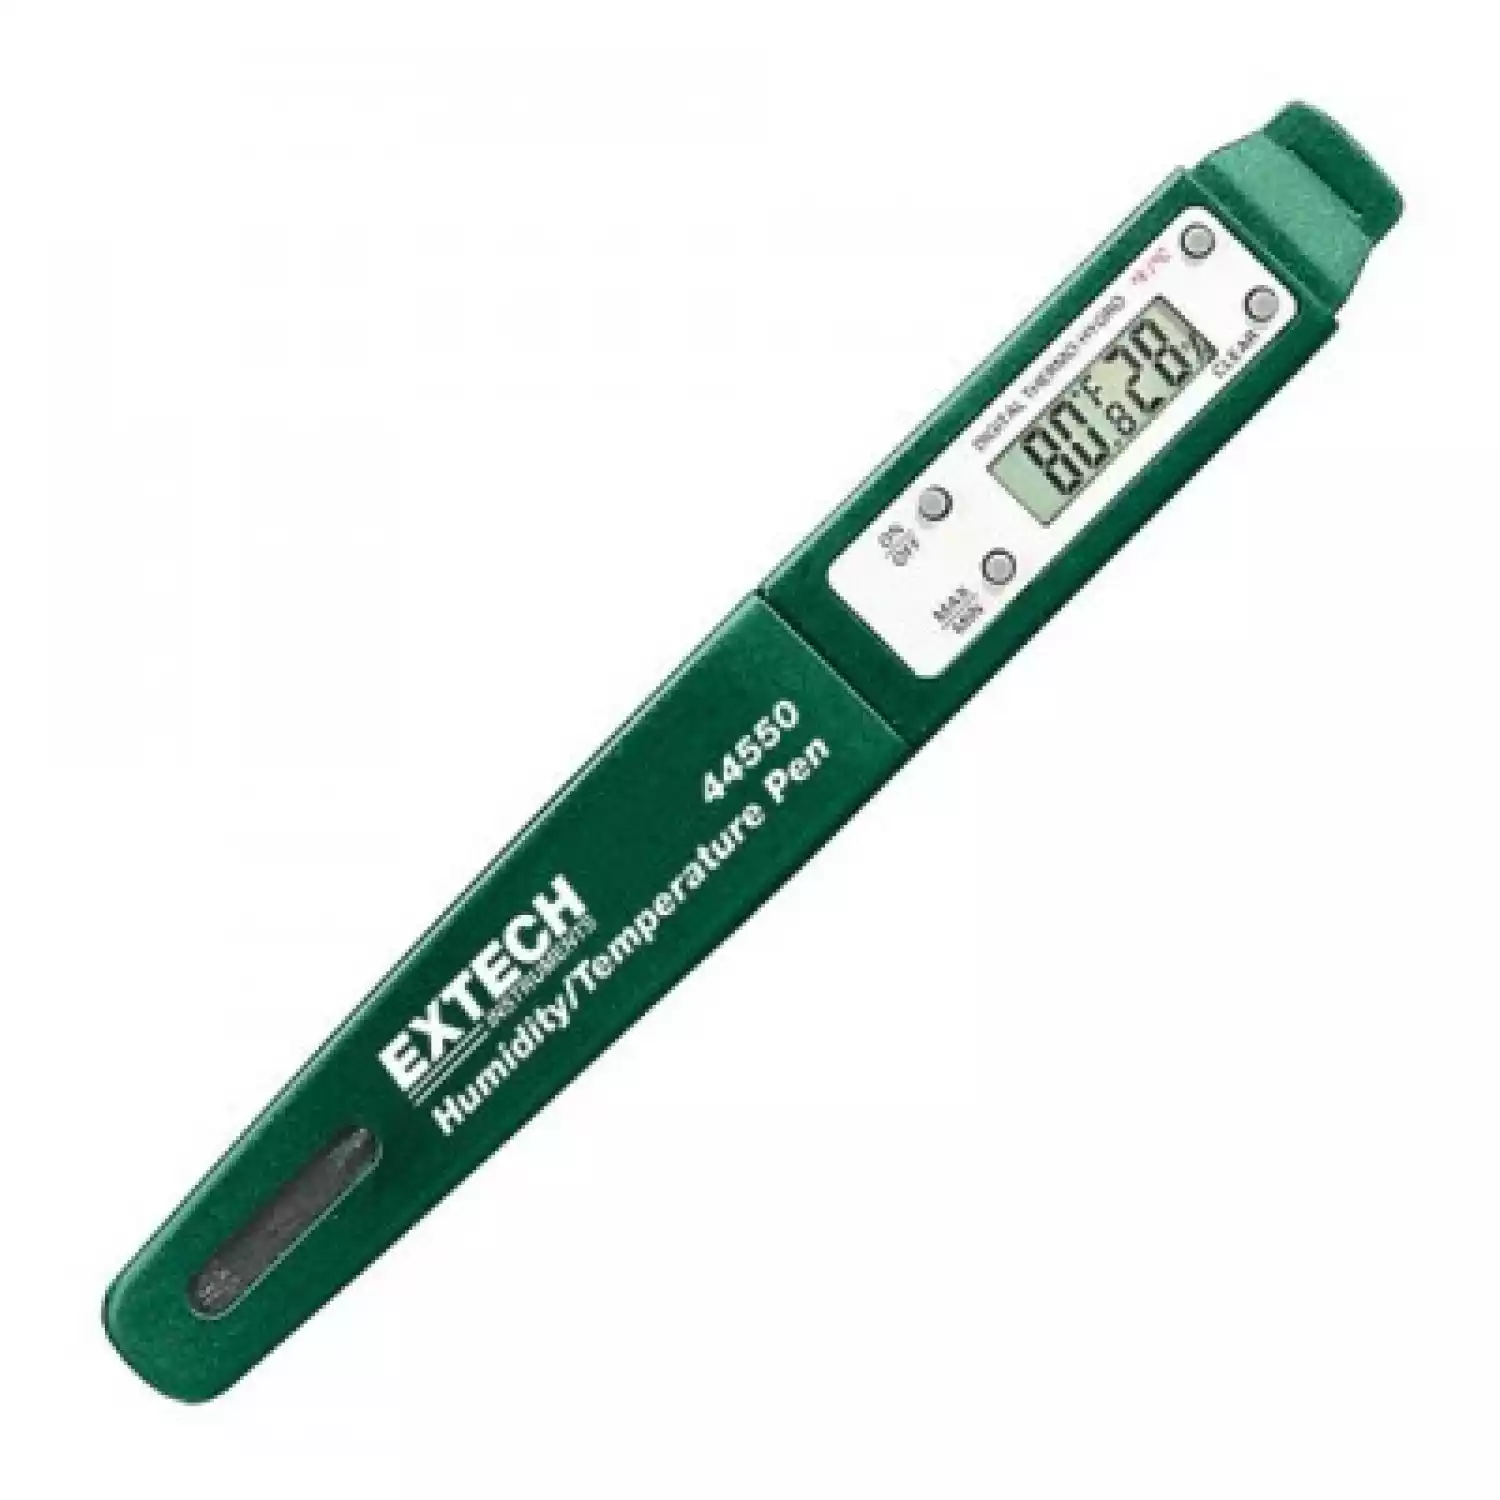 Прибор в форме ручки для измерения влажности и температуры Extech 44550 - 1